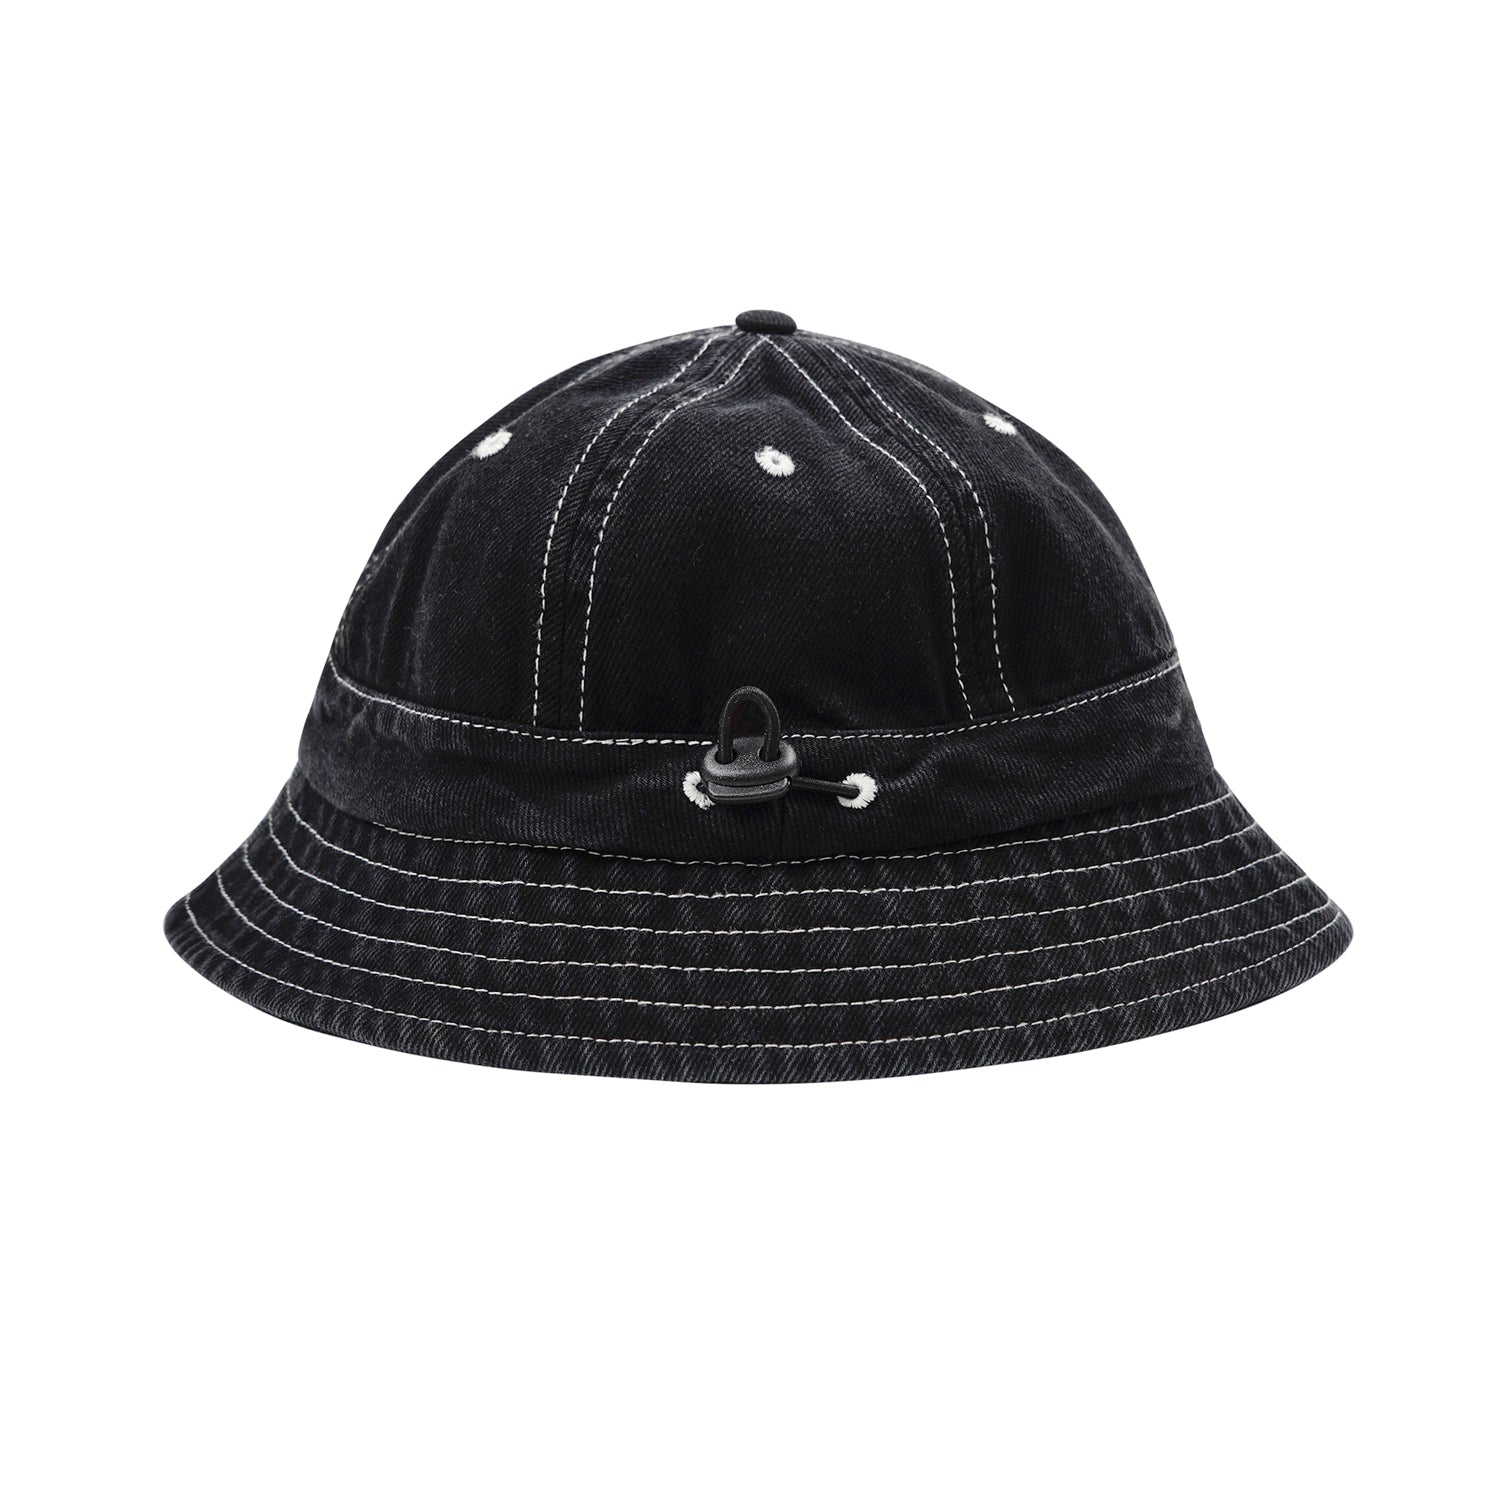 MAGENTA SKATEBOARDS - STITCH BUCKET HAT "Black Denim"